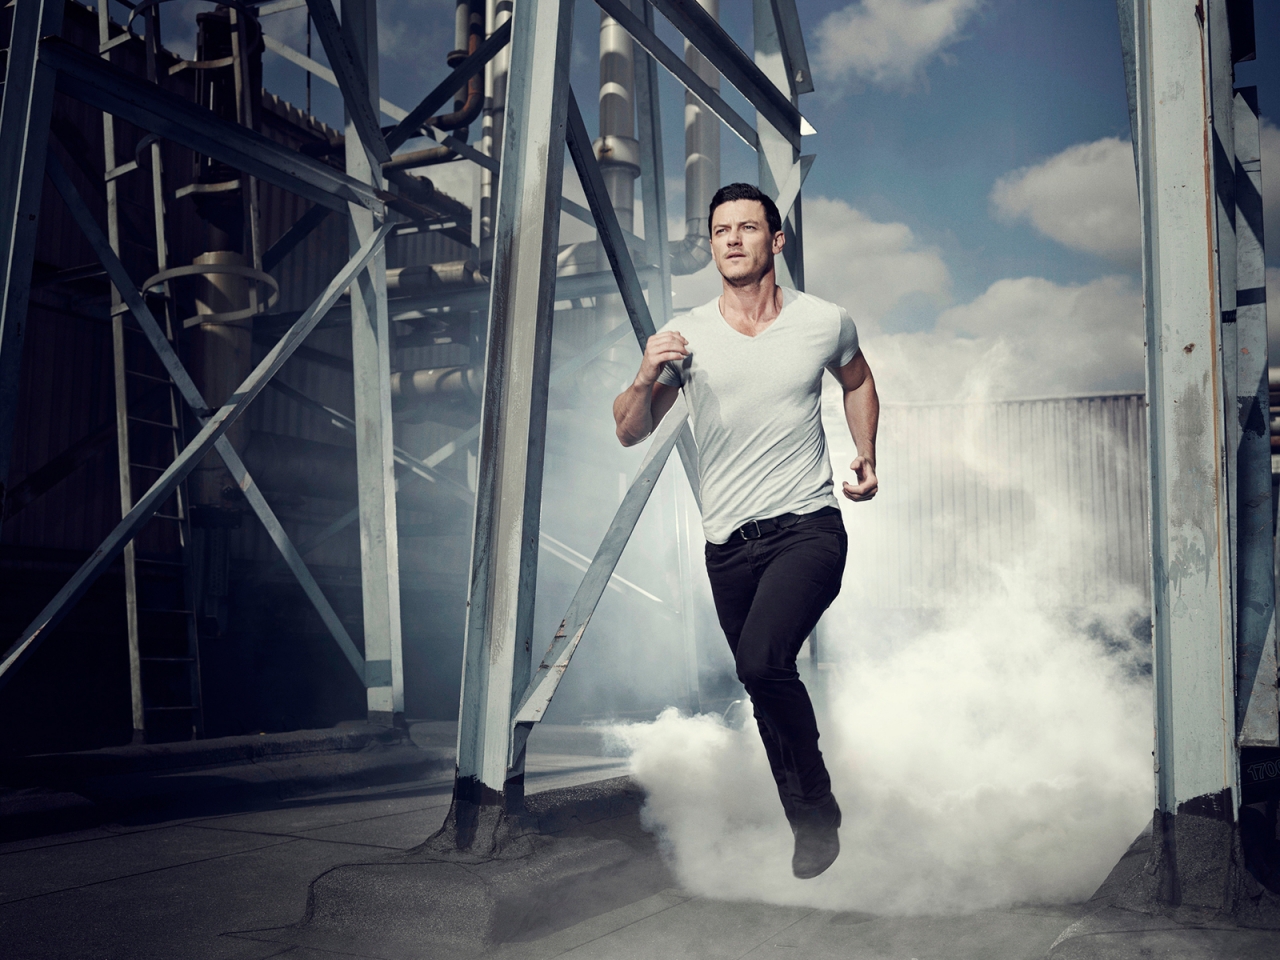 Luke Evans Running for 1280 x 960 resolution